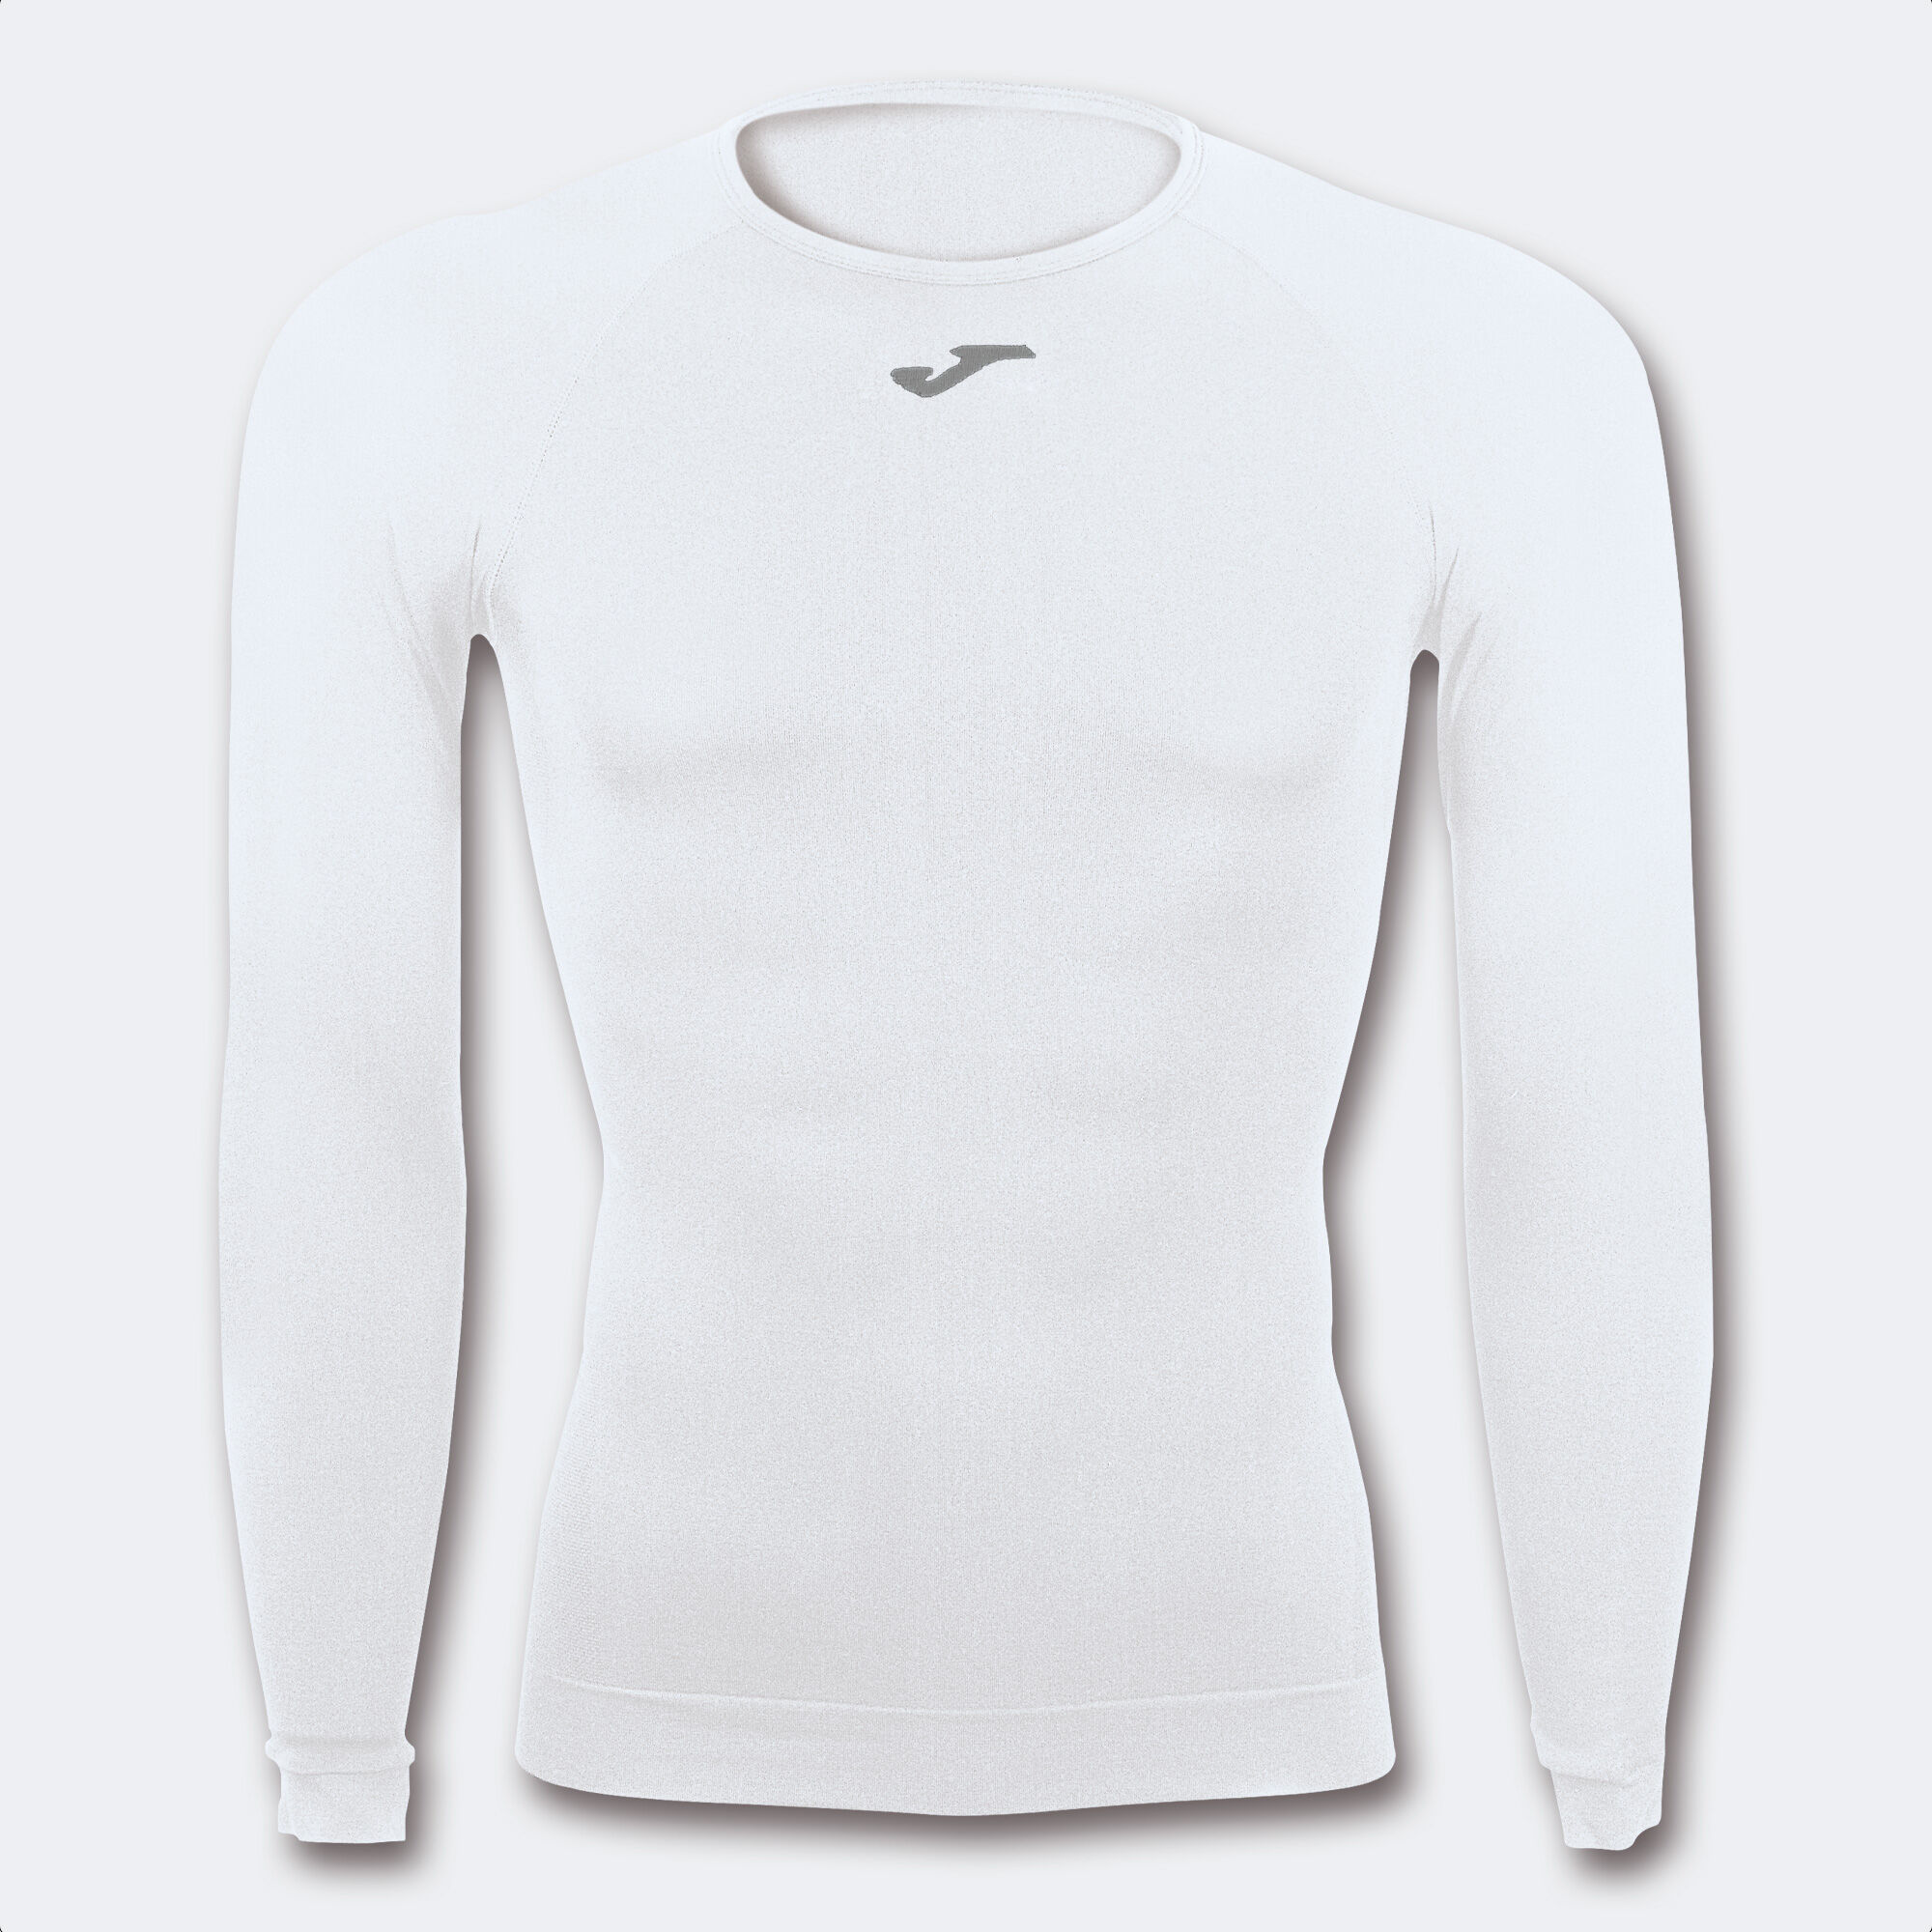 Camiseta manga larga unisex Brama Classic blanco